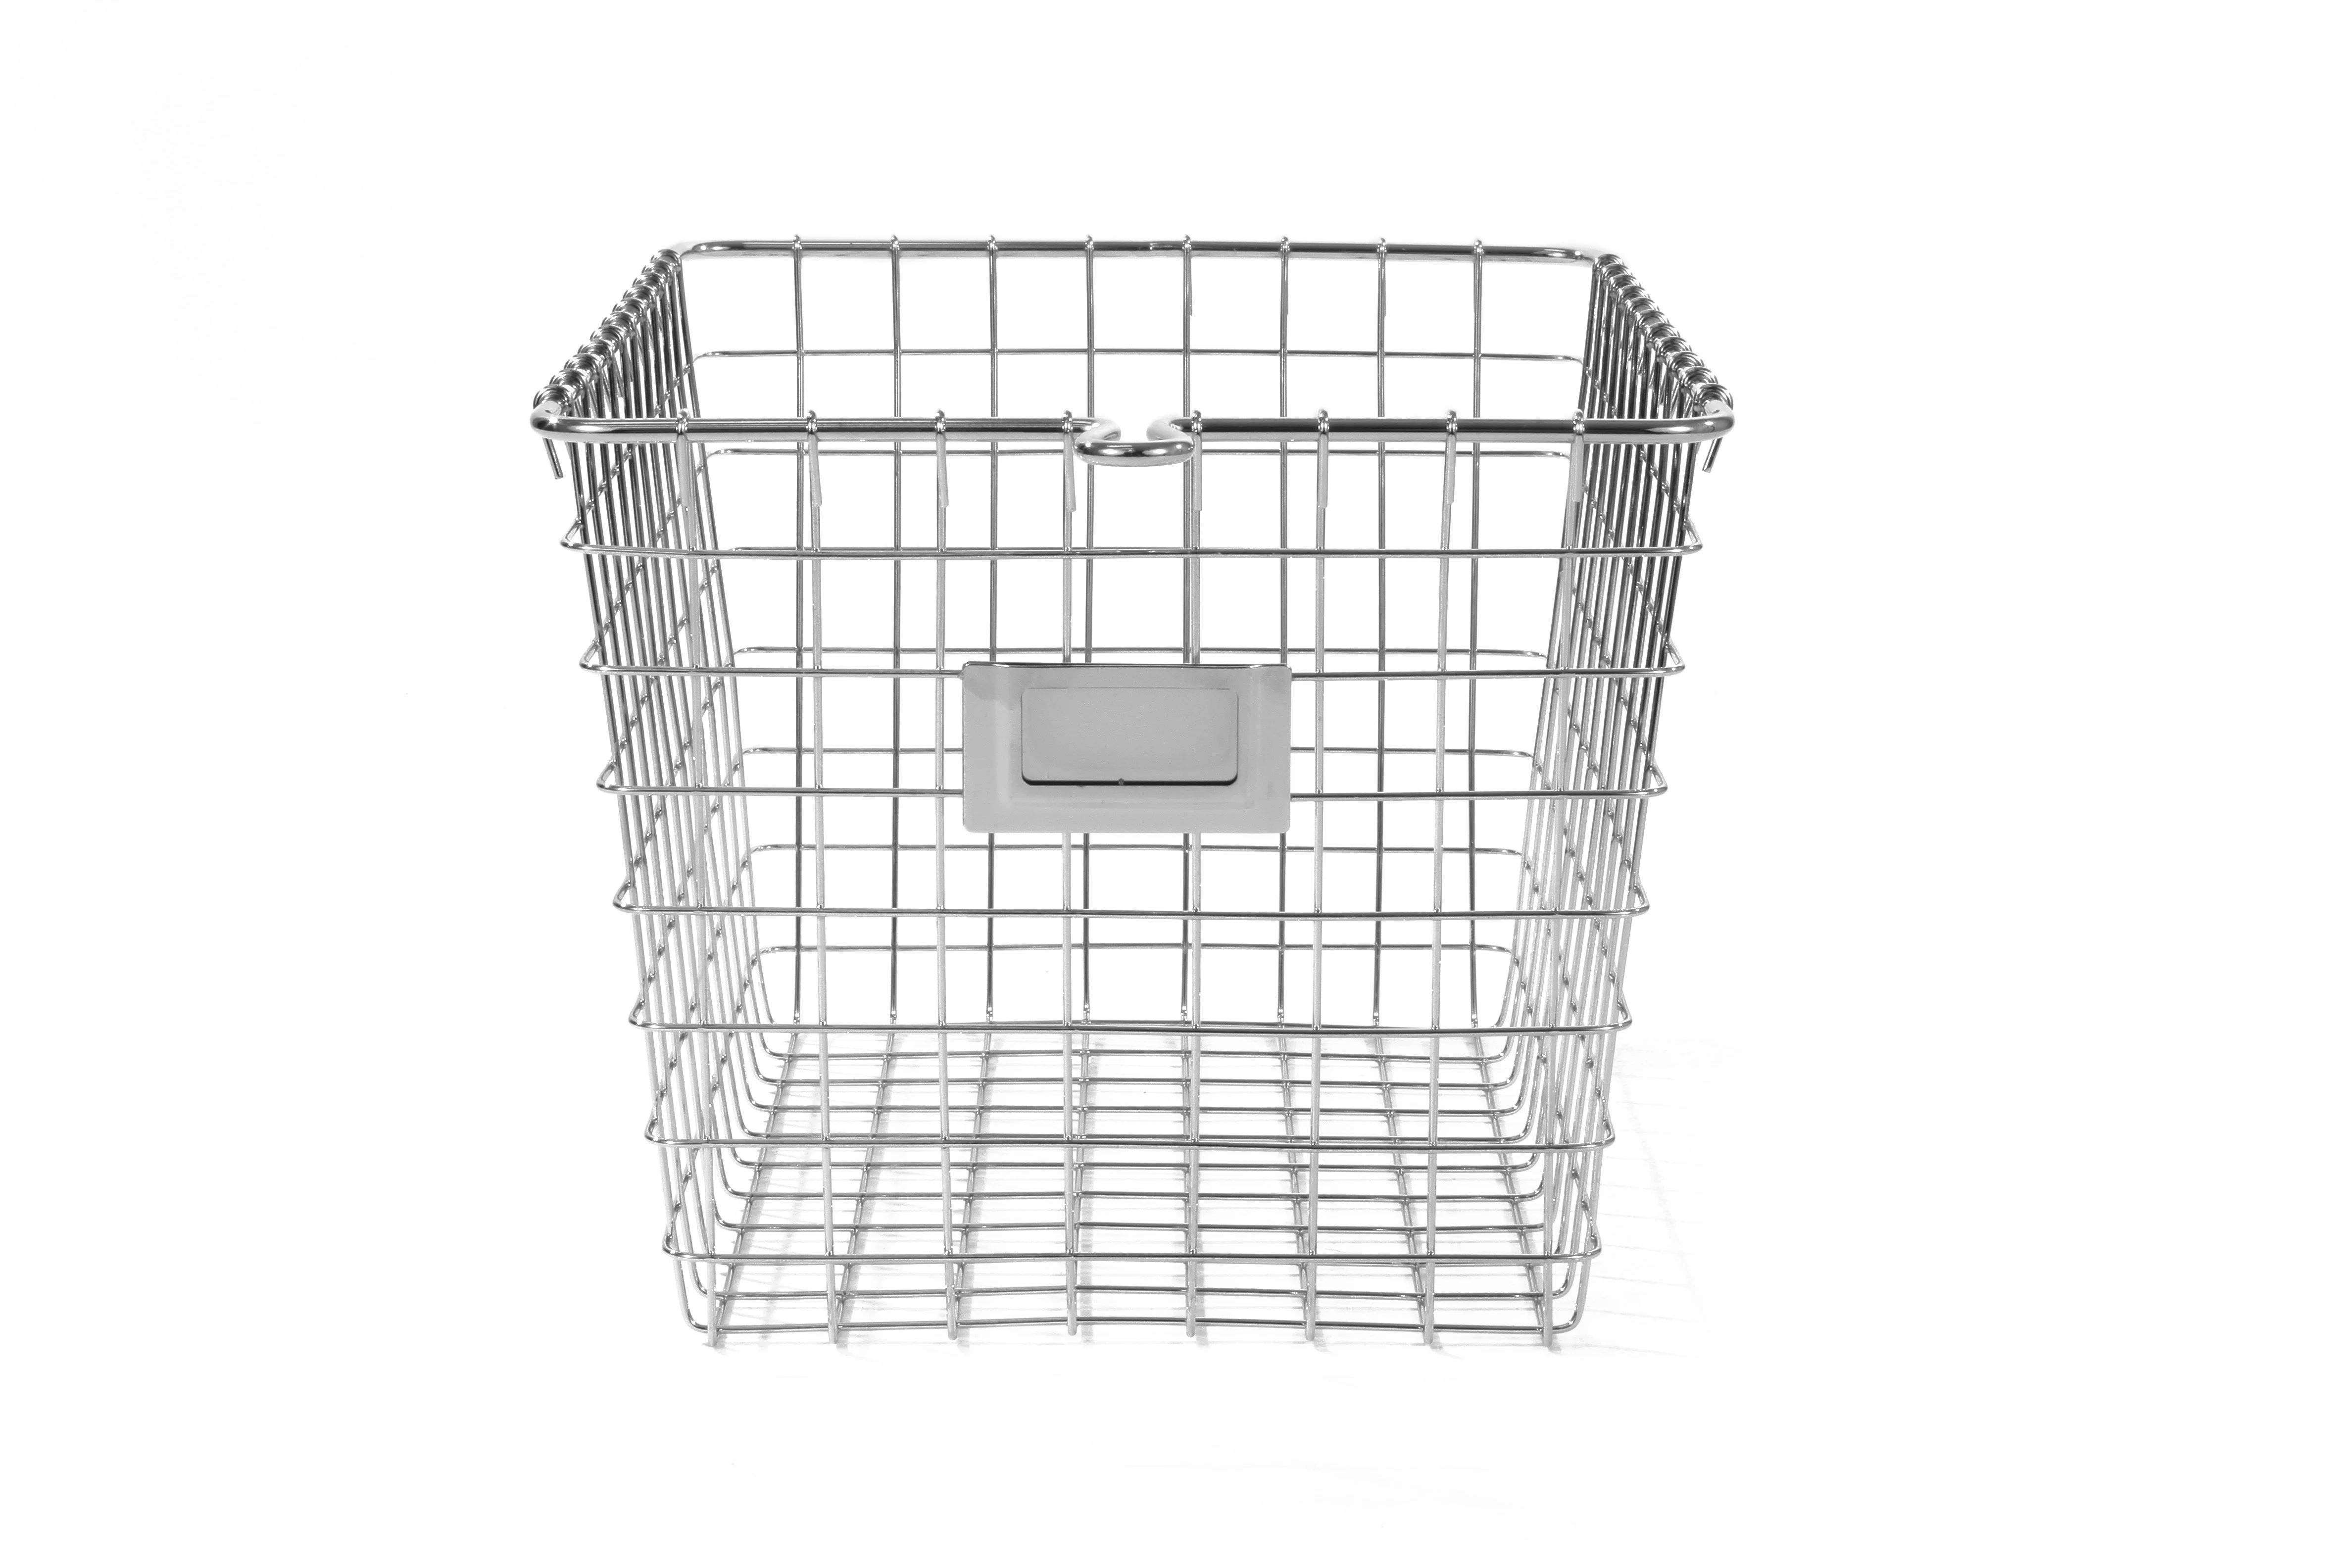 Spectrum Diversified Wire Storage Basket, Vintage Locker Basket Style, Rustic Farmhouse Chic, Ste... | Walmart (US)